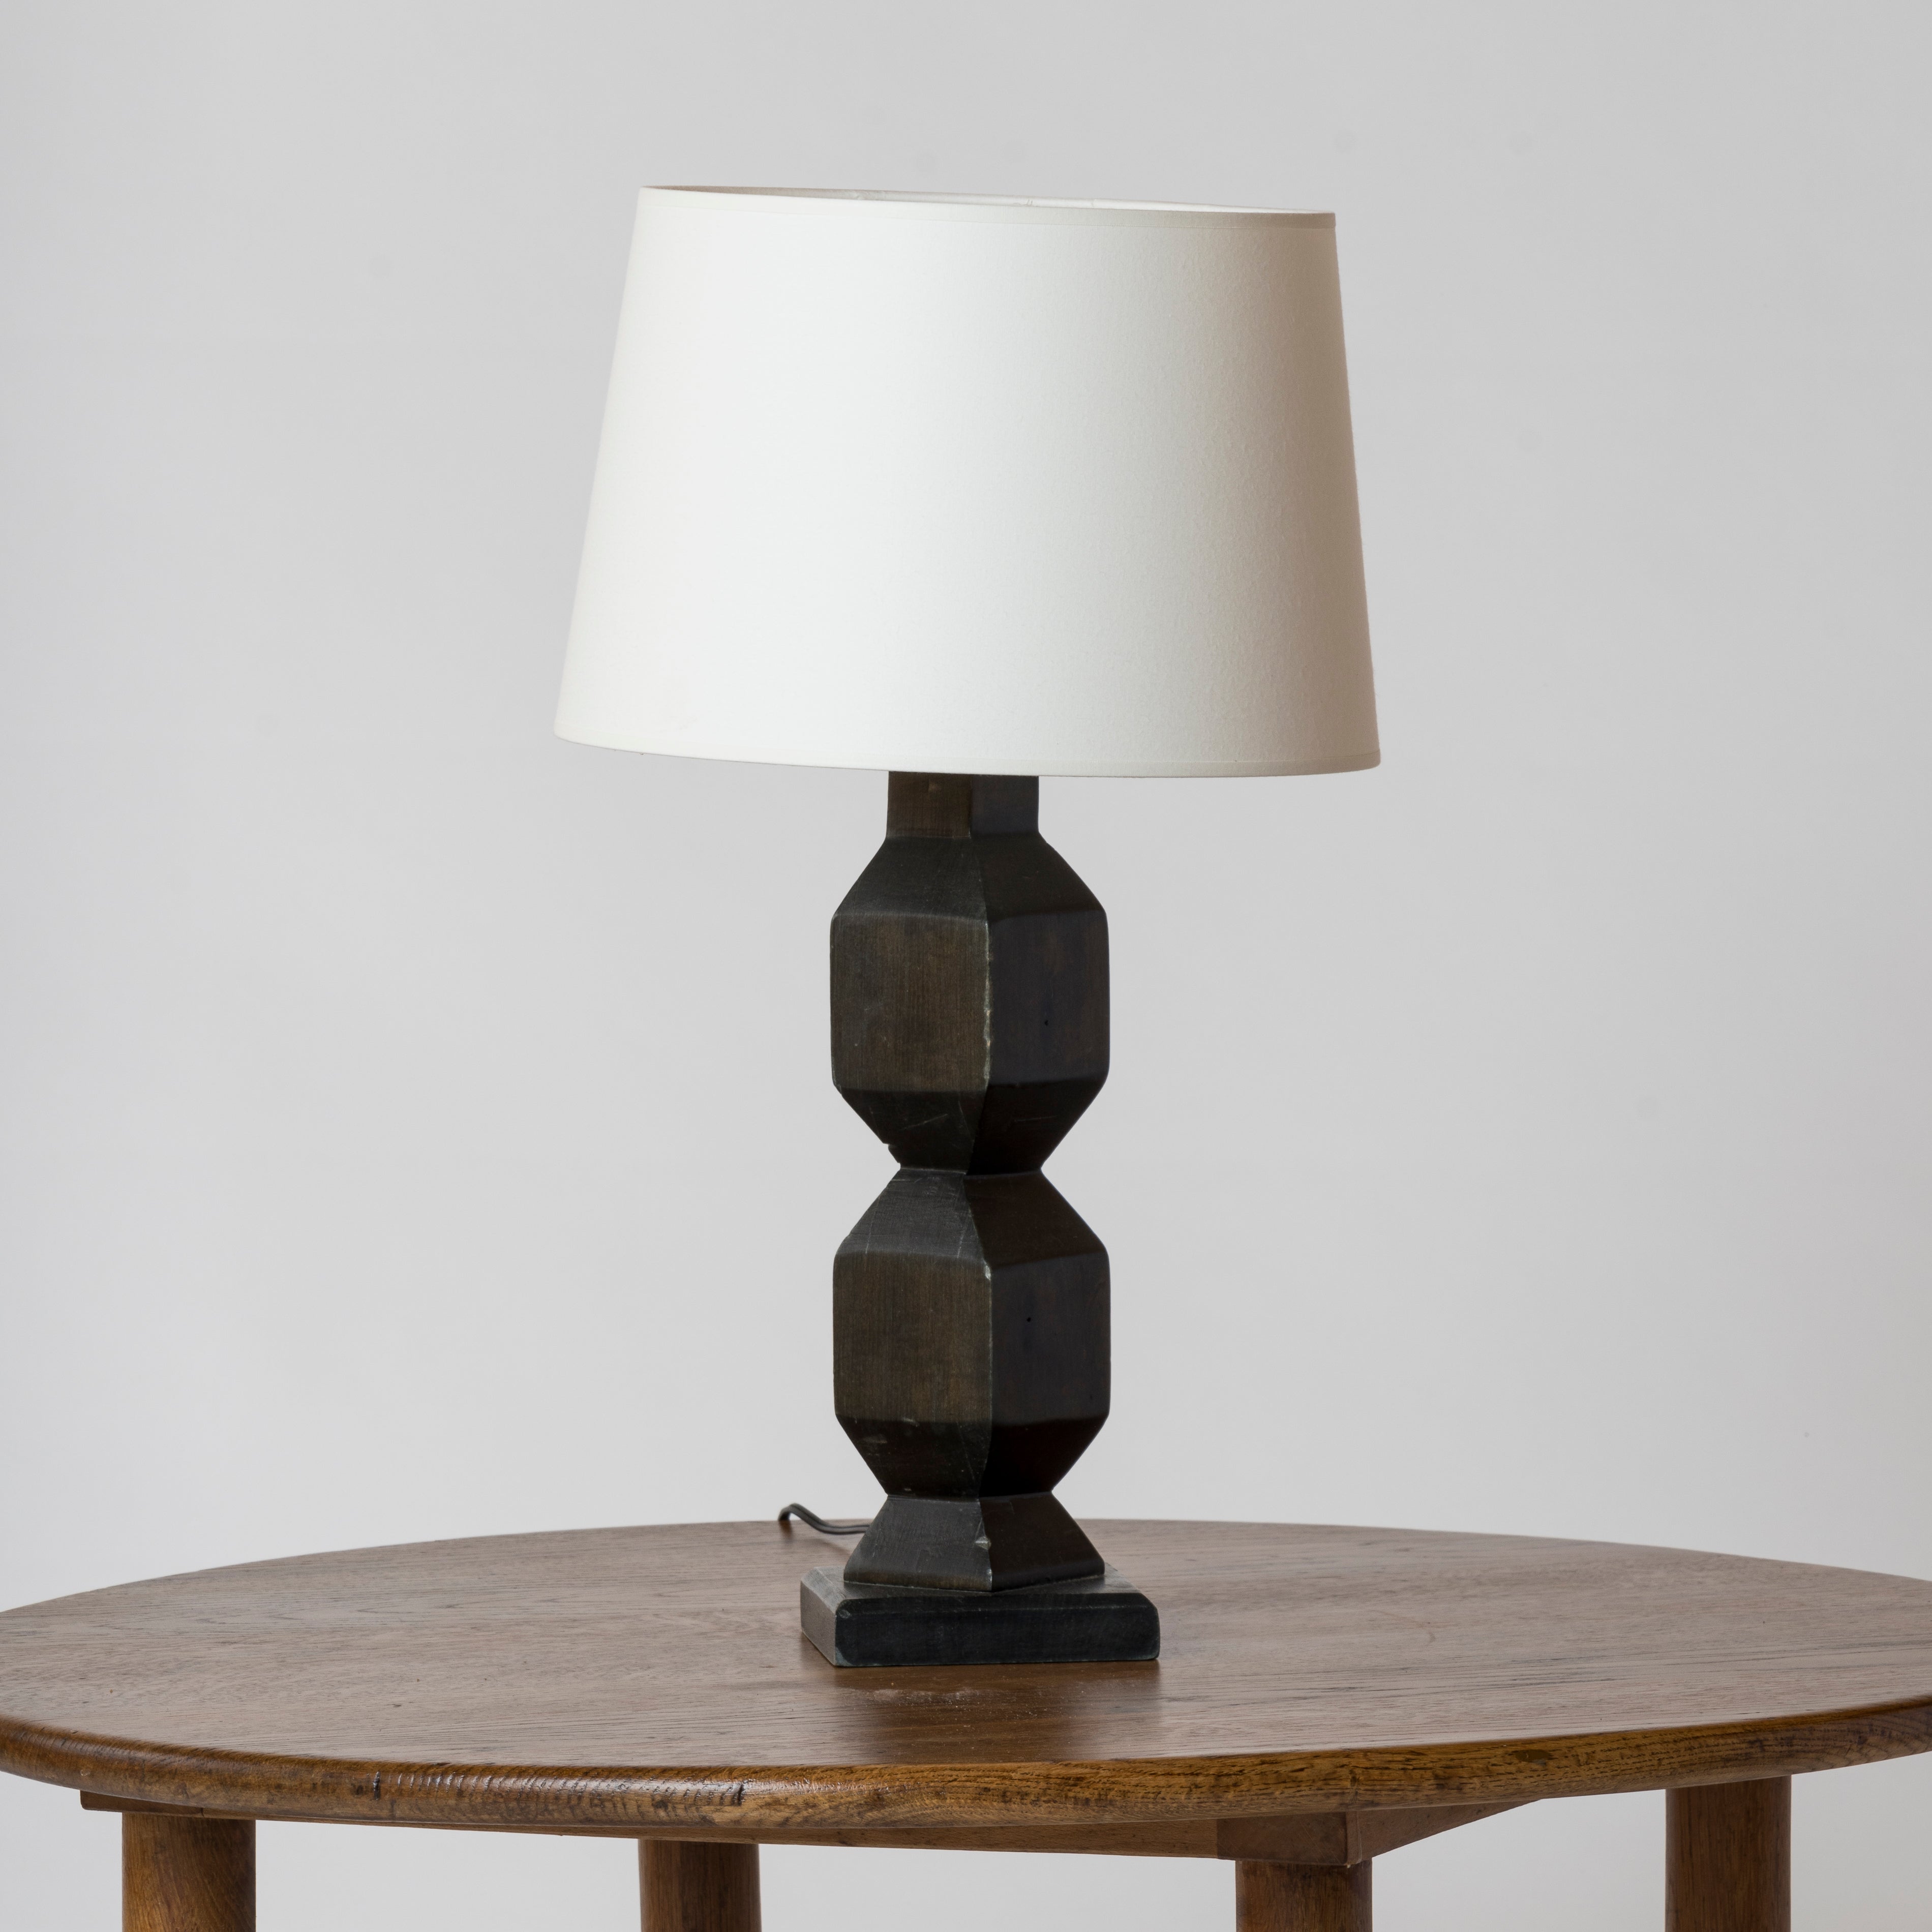 "Bois noirci" sculpted wood petite table lamp